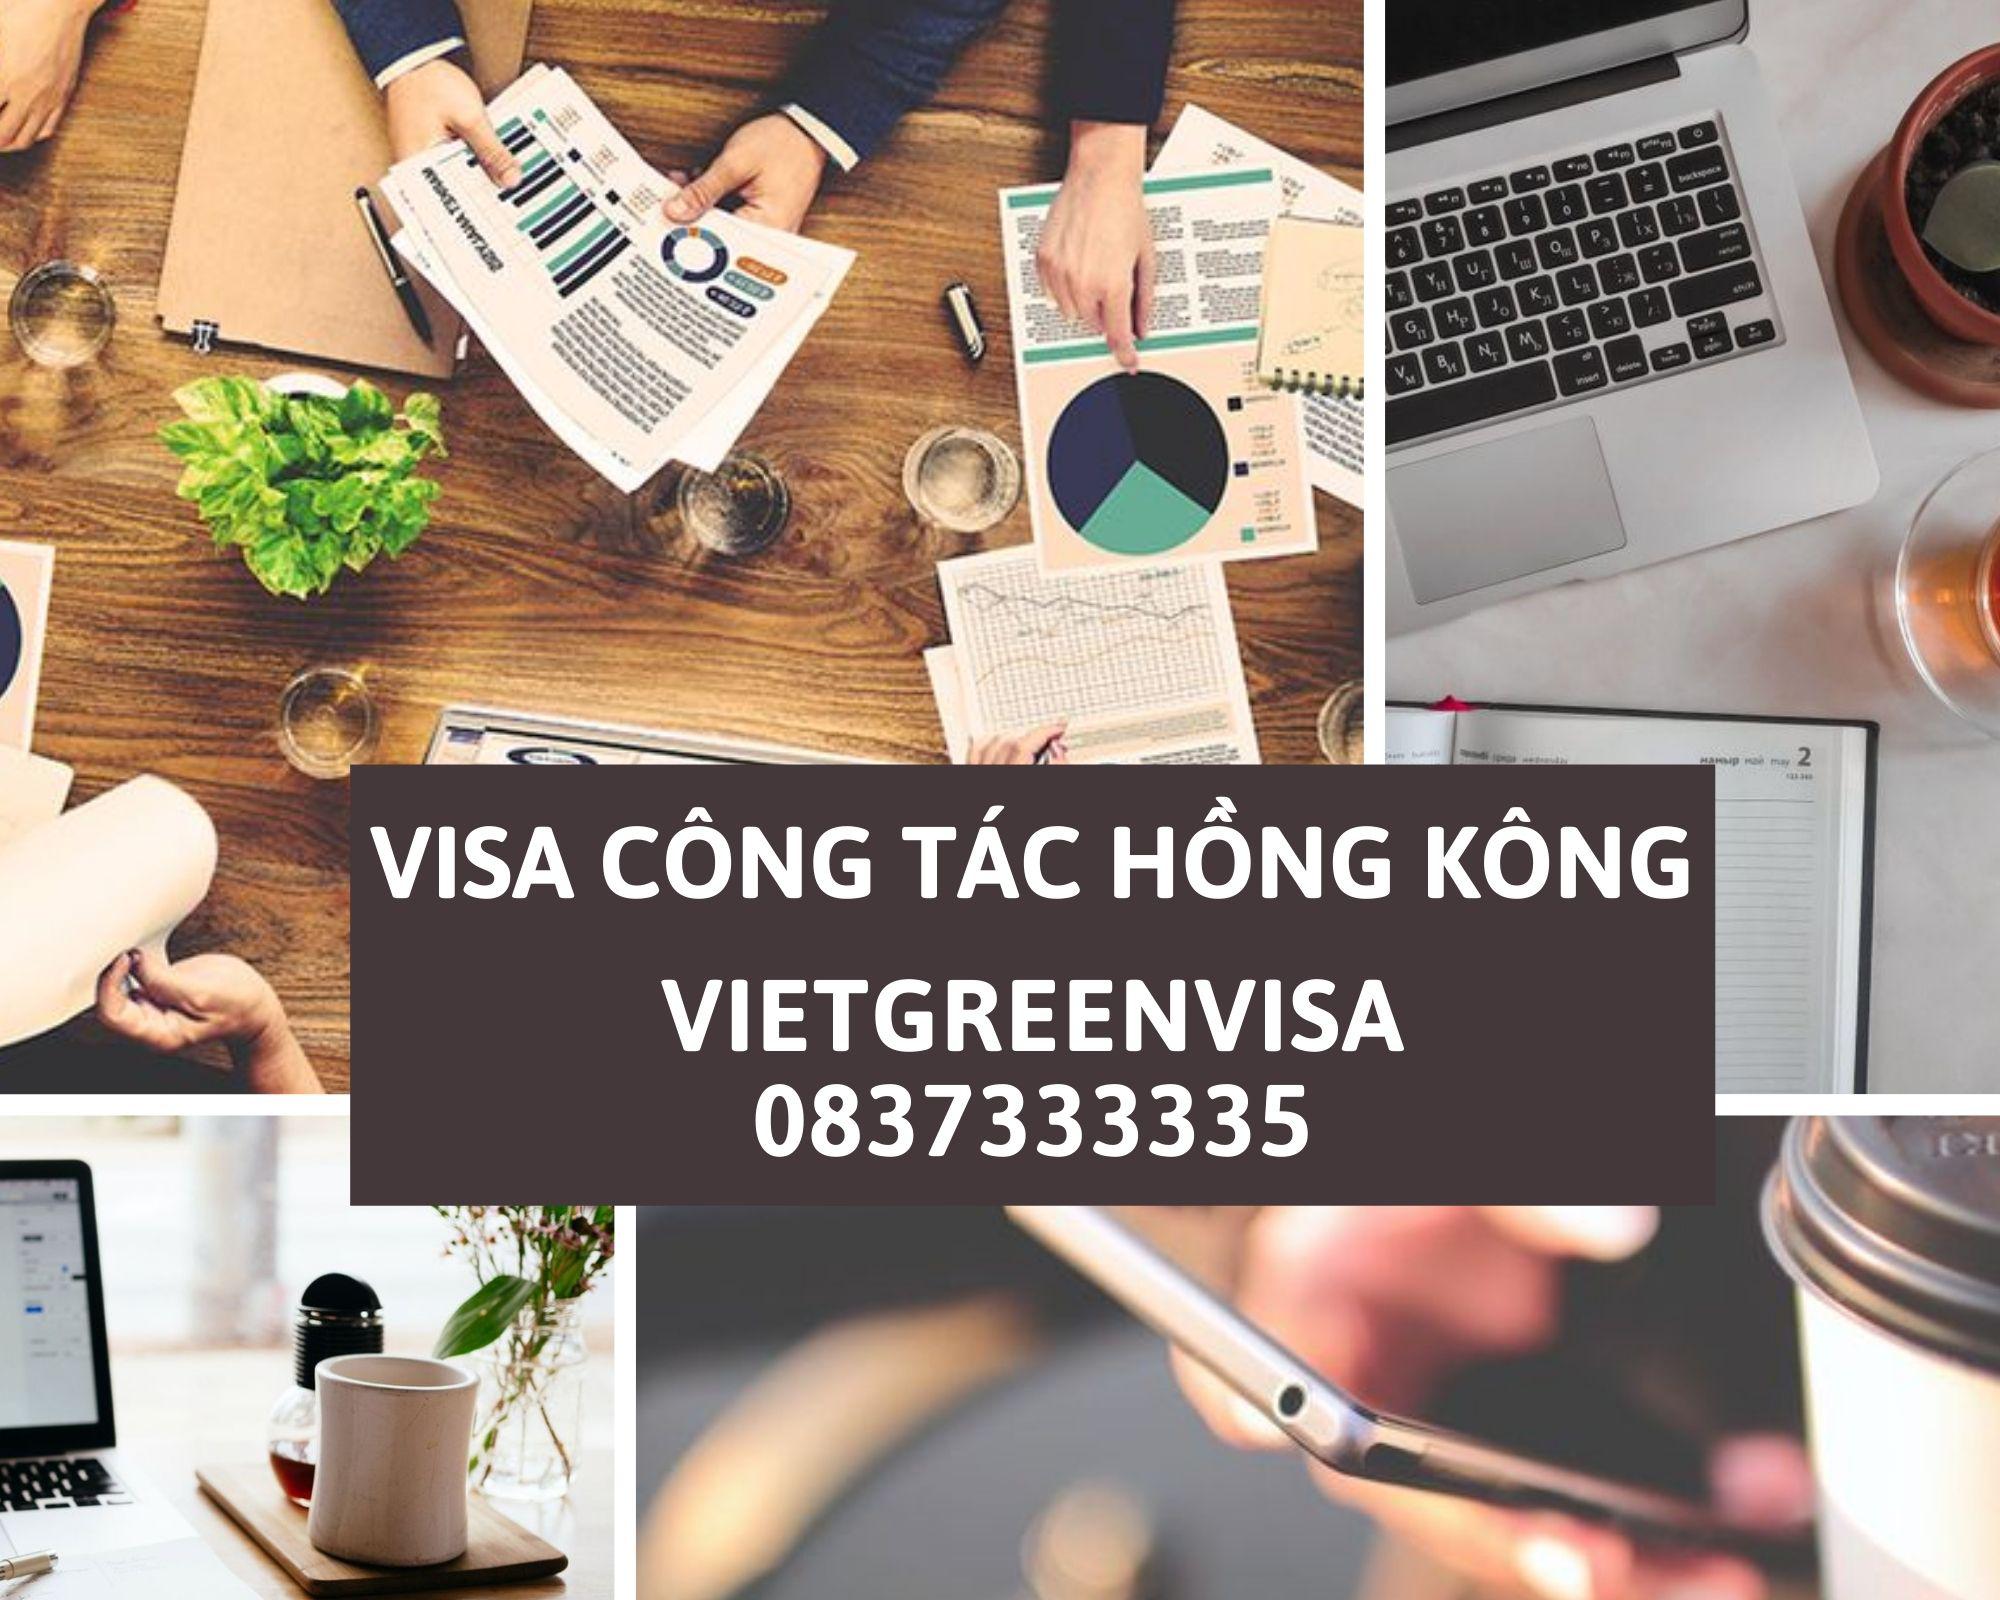 Dịch vụ xin visa Hồng Kông uy tín , Làm visa đi Hồng Kông, Hướng dẫn hồ sơ visa Hồng Kông, Xin visa Hồng Kông trọn gói